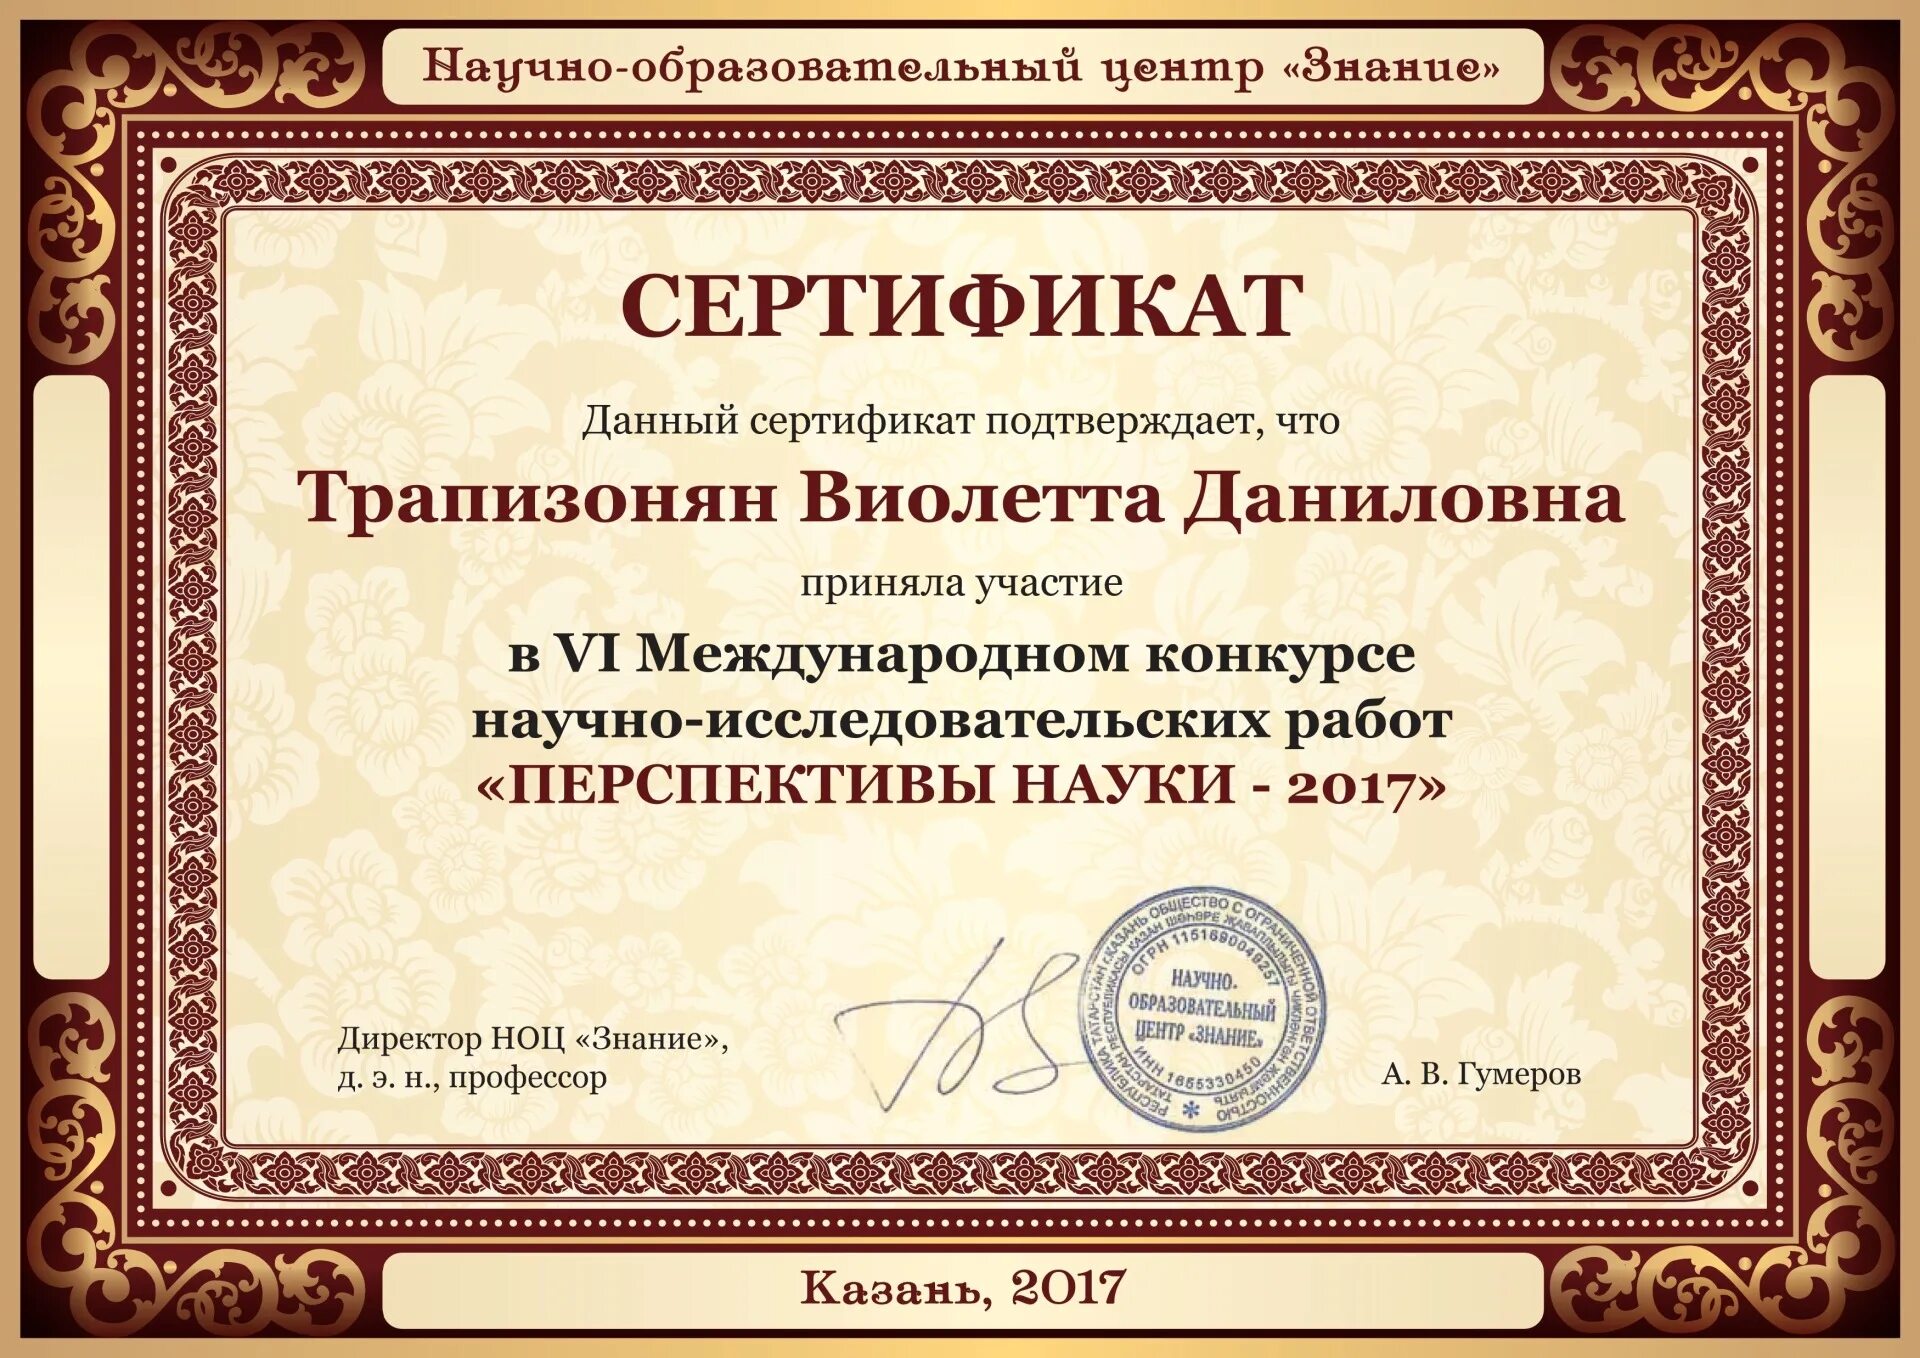 Образовательный сертификат. Сертификат в образовательный центр. Сертификат о научной статье. Публикация научных статей сертификат.